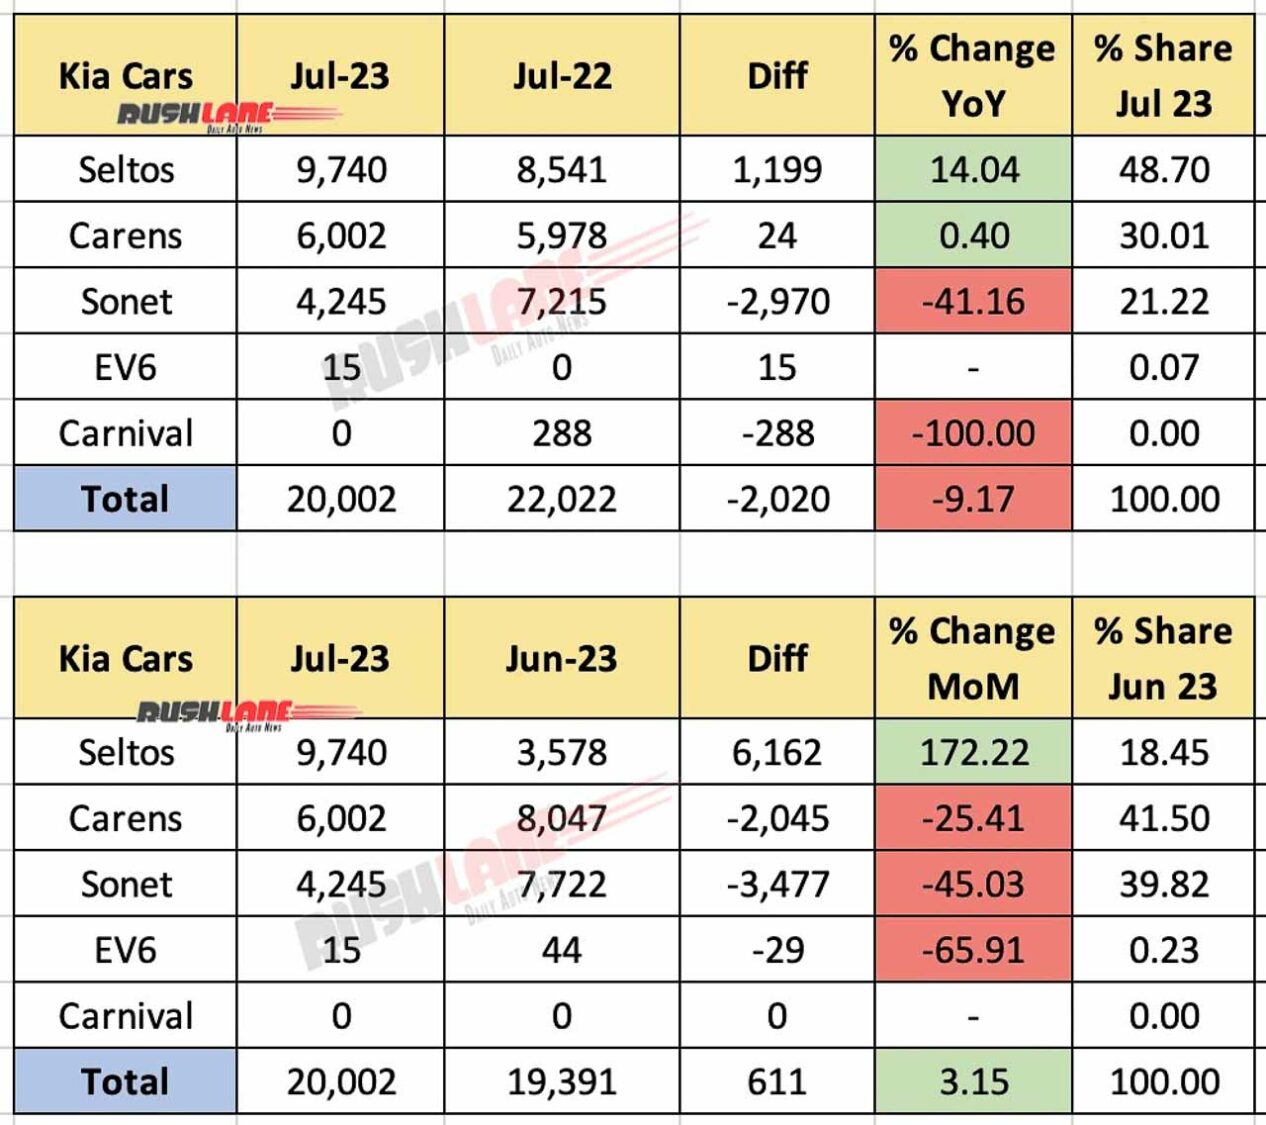 Kia India Sales Breakup July 2023